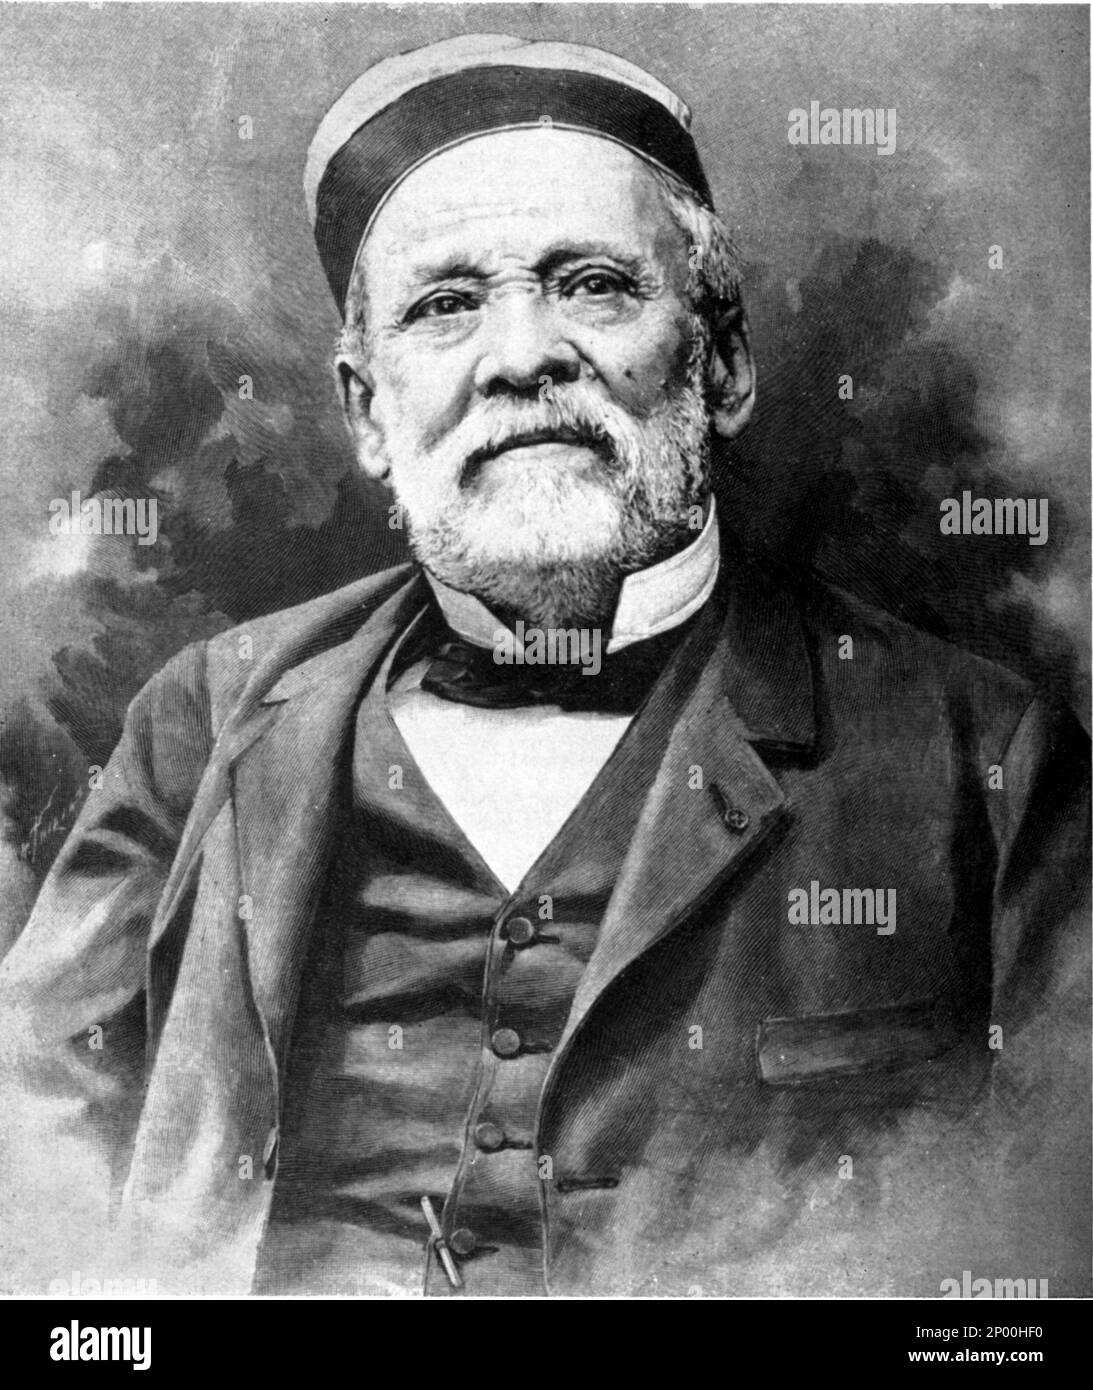 Der gefeierte französische Wissenschaftler , Schimiker und Mikrobiologe LOUIS PASTEUR ( Dole 1822 - Villeneuve-l'Etang 1895 ) , Gravur Porträt - SCIENZIATO - ritratto - Weißbart - barba bianca - ANTIRABBICA - PASTEURISIERUNG - IMPFUNG - PASTORIZAZIONE - VACCINAZIONE - Fondatore della MICROBIOLOGIA - IMMUNOLOGIA - MIKROBIOLOGIE - IMMOCINAZIOLOGON - Thin - Thinavione - Thindylo Stockfoto